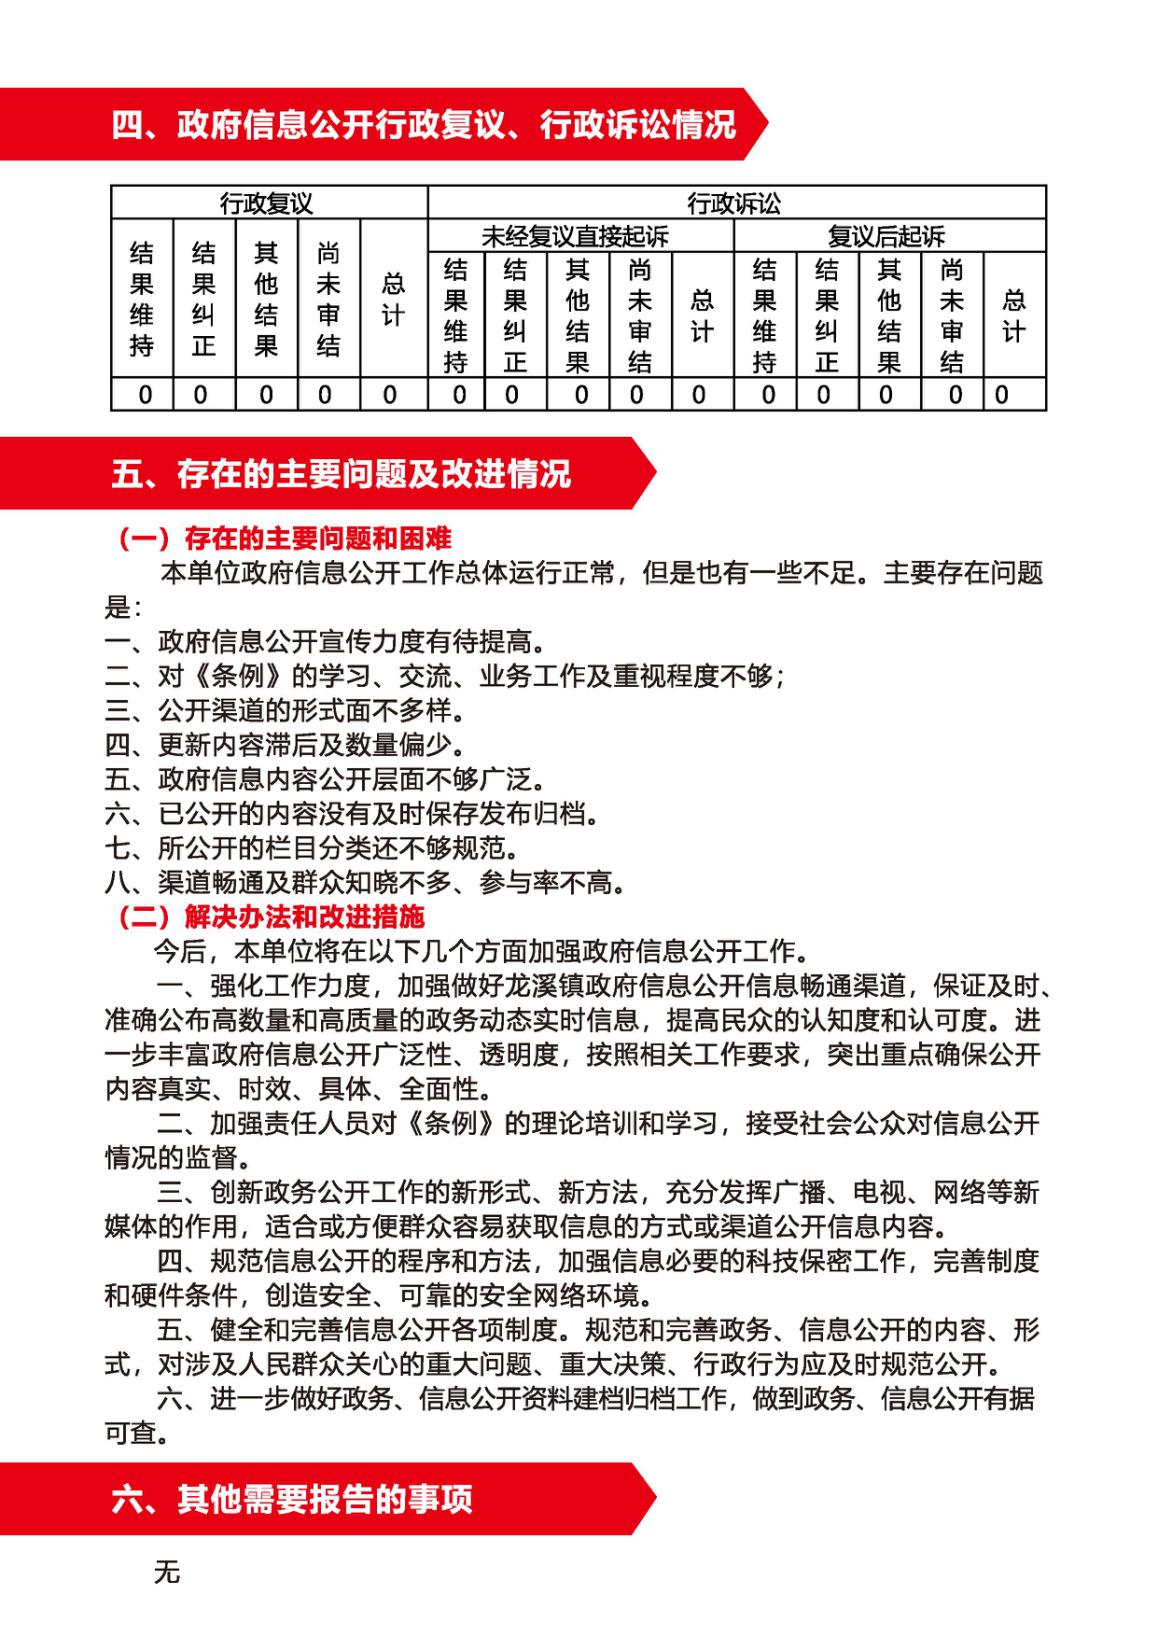 龙溪镇2020年政府信息公开工作报告(1)_页面_4